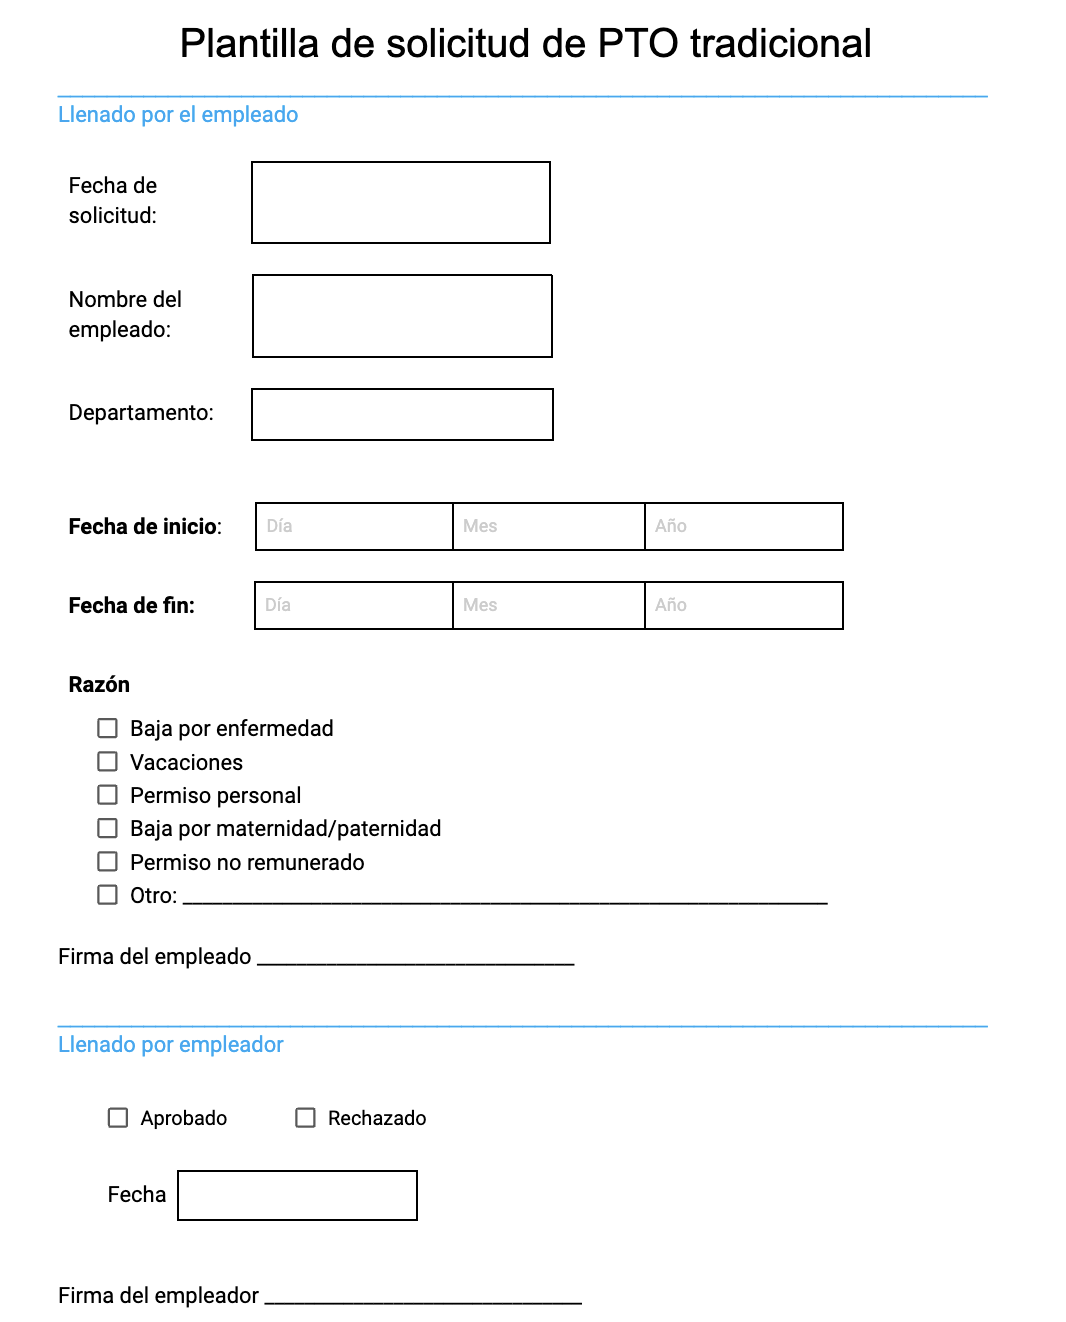 Plantilla de formulario de solicitud de PTO tradicional